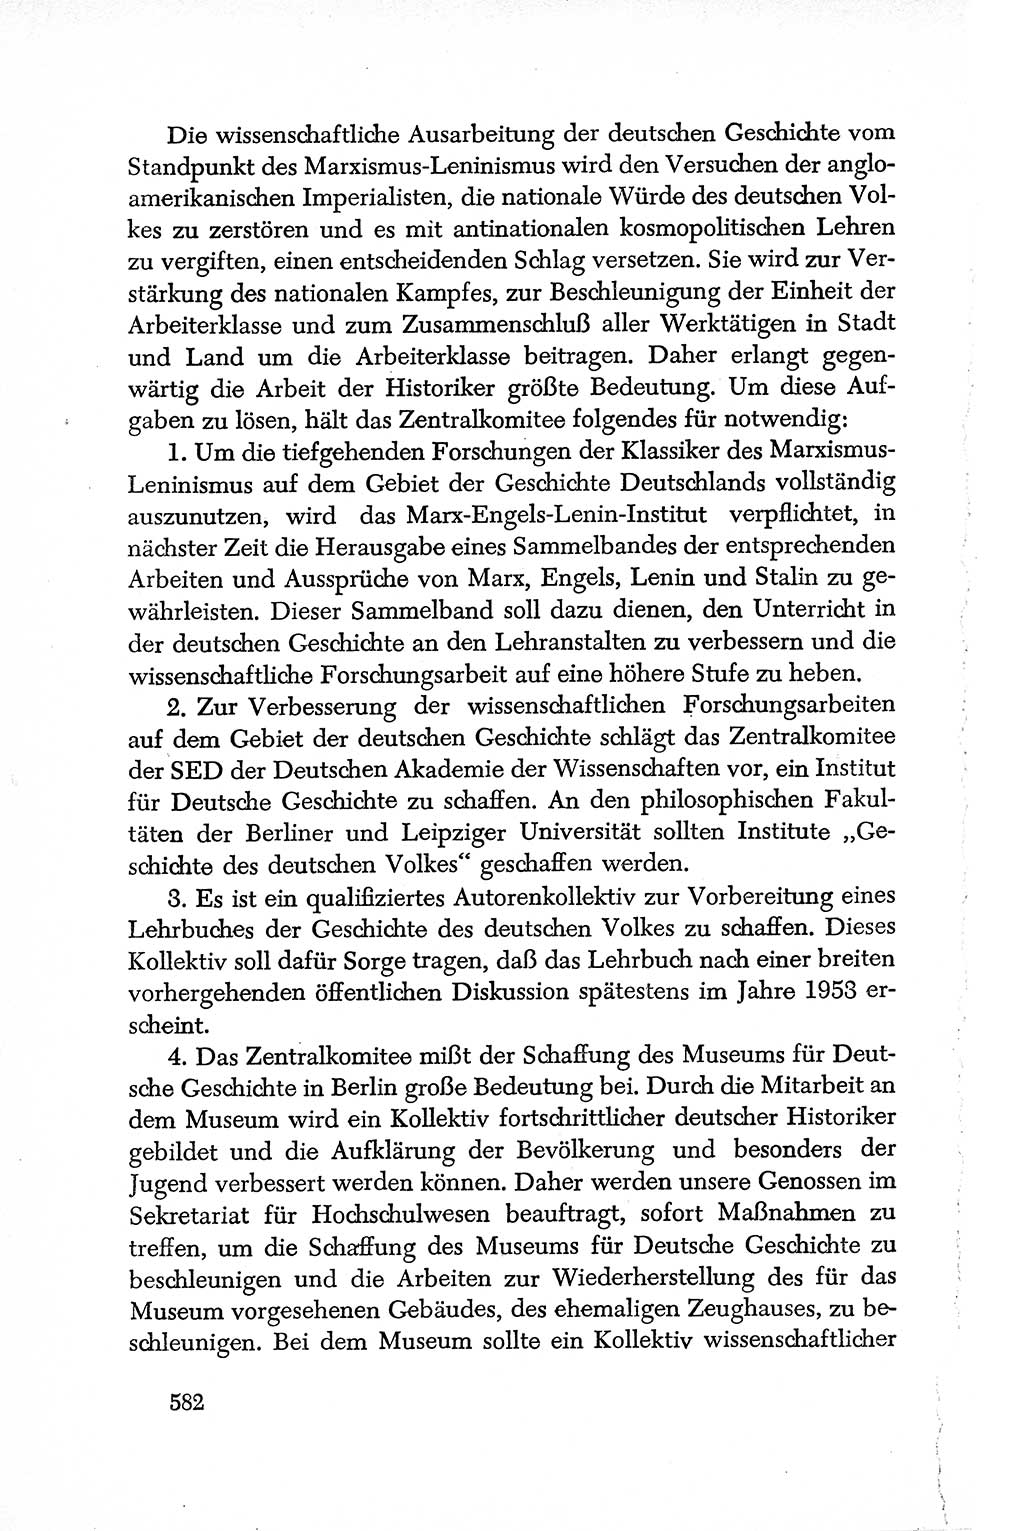 Dokumente der Sozialistischen Einheitspartei Deutschlands (SED) [Deutsche Demokratische Republik (DDR)] 1950-1952, Seite 582 (Dok. SED DDR 1950-1952, S. 582)